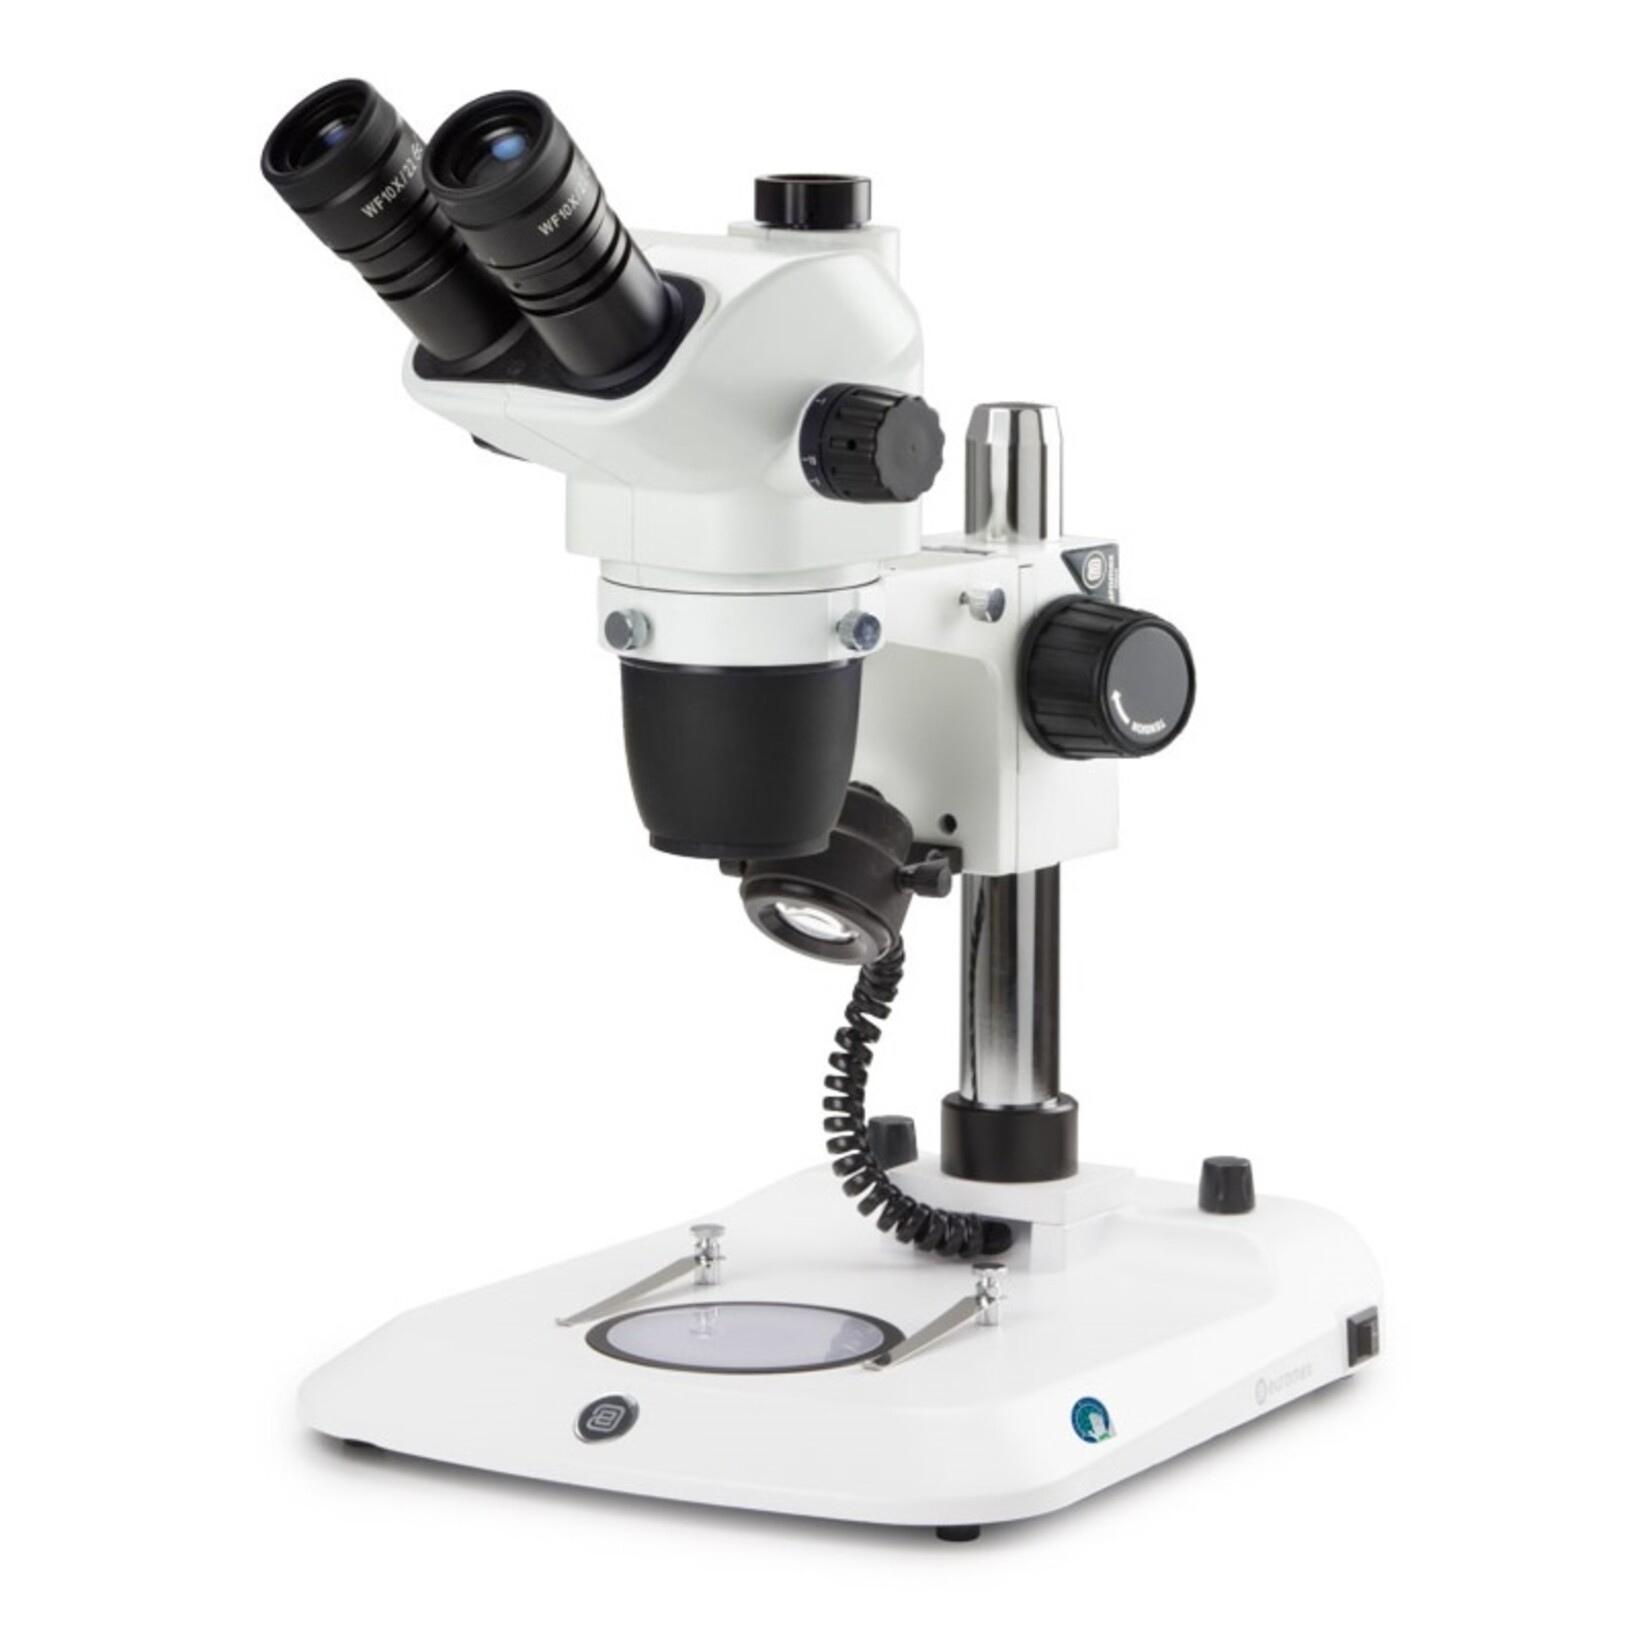 Trinocular stereo zoom microscope NexiusZoom EVO, 0.65x to 5.5x zoom lens